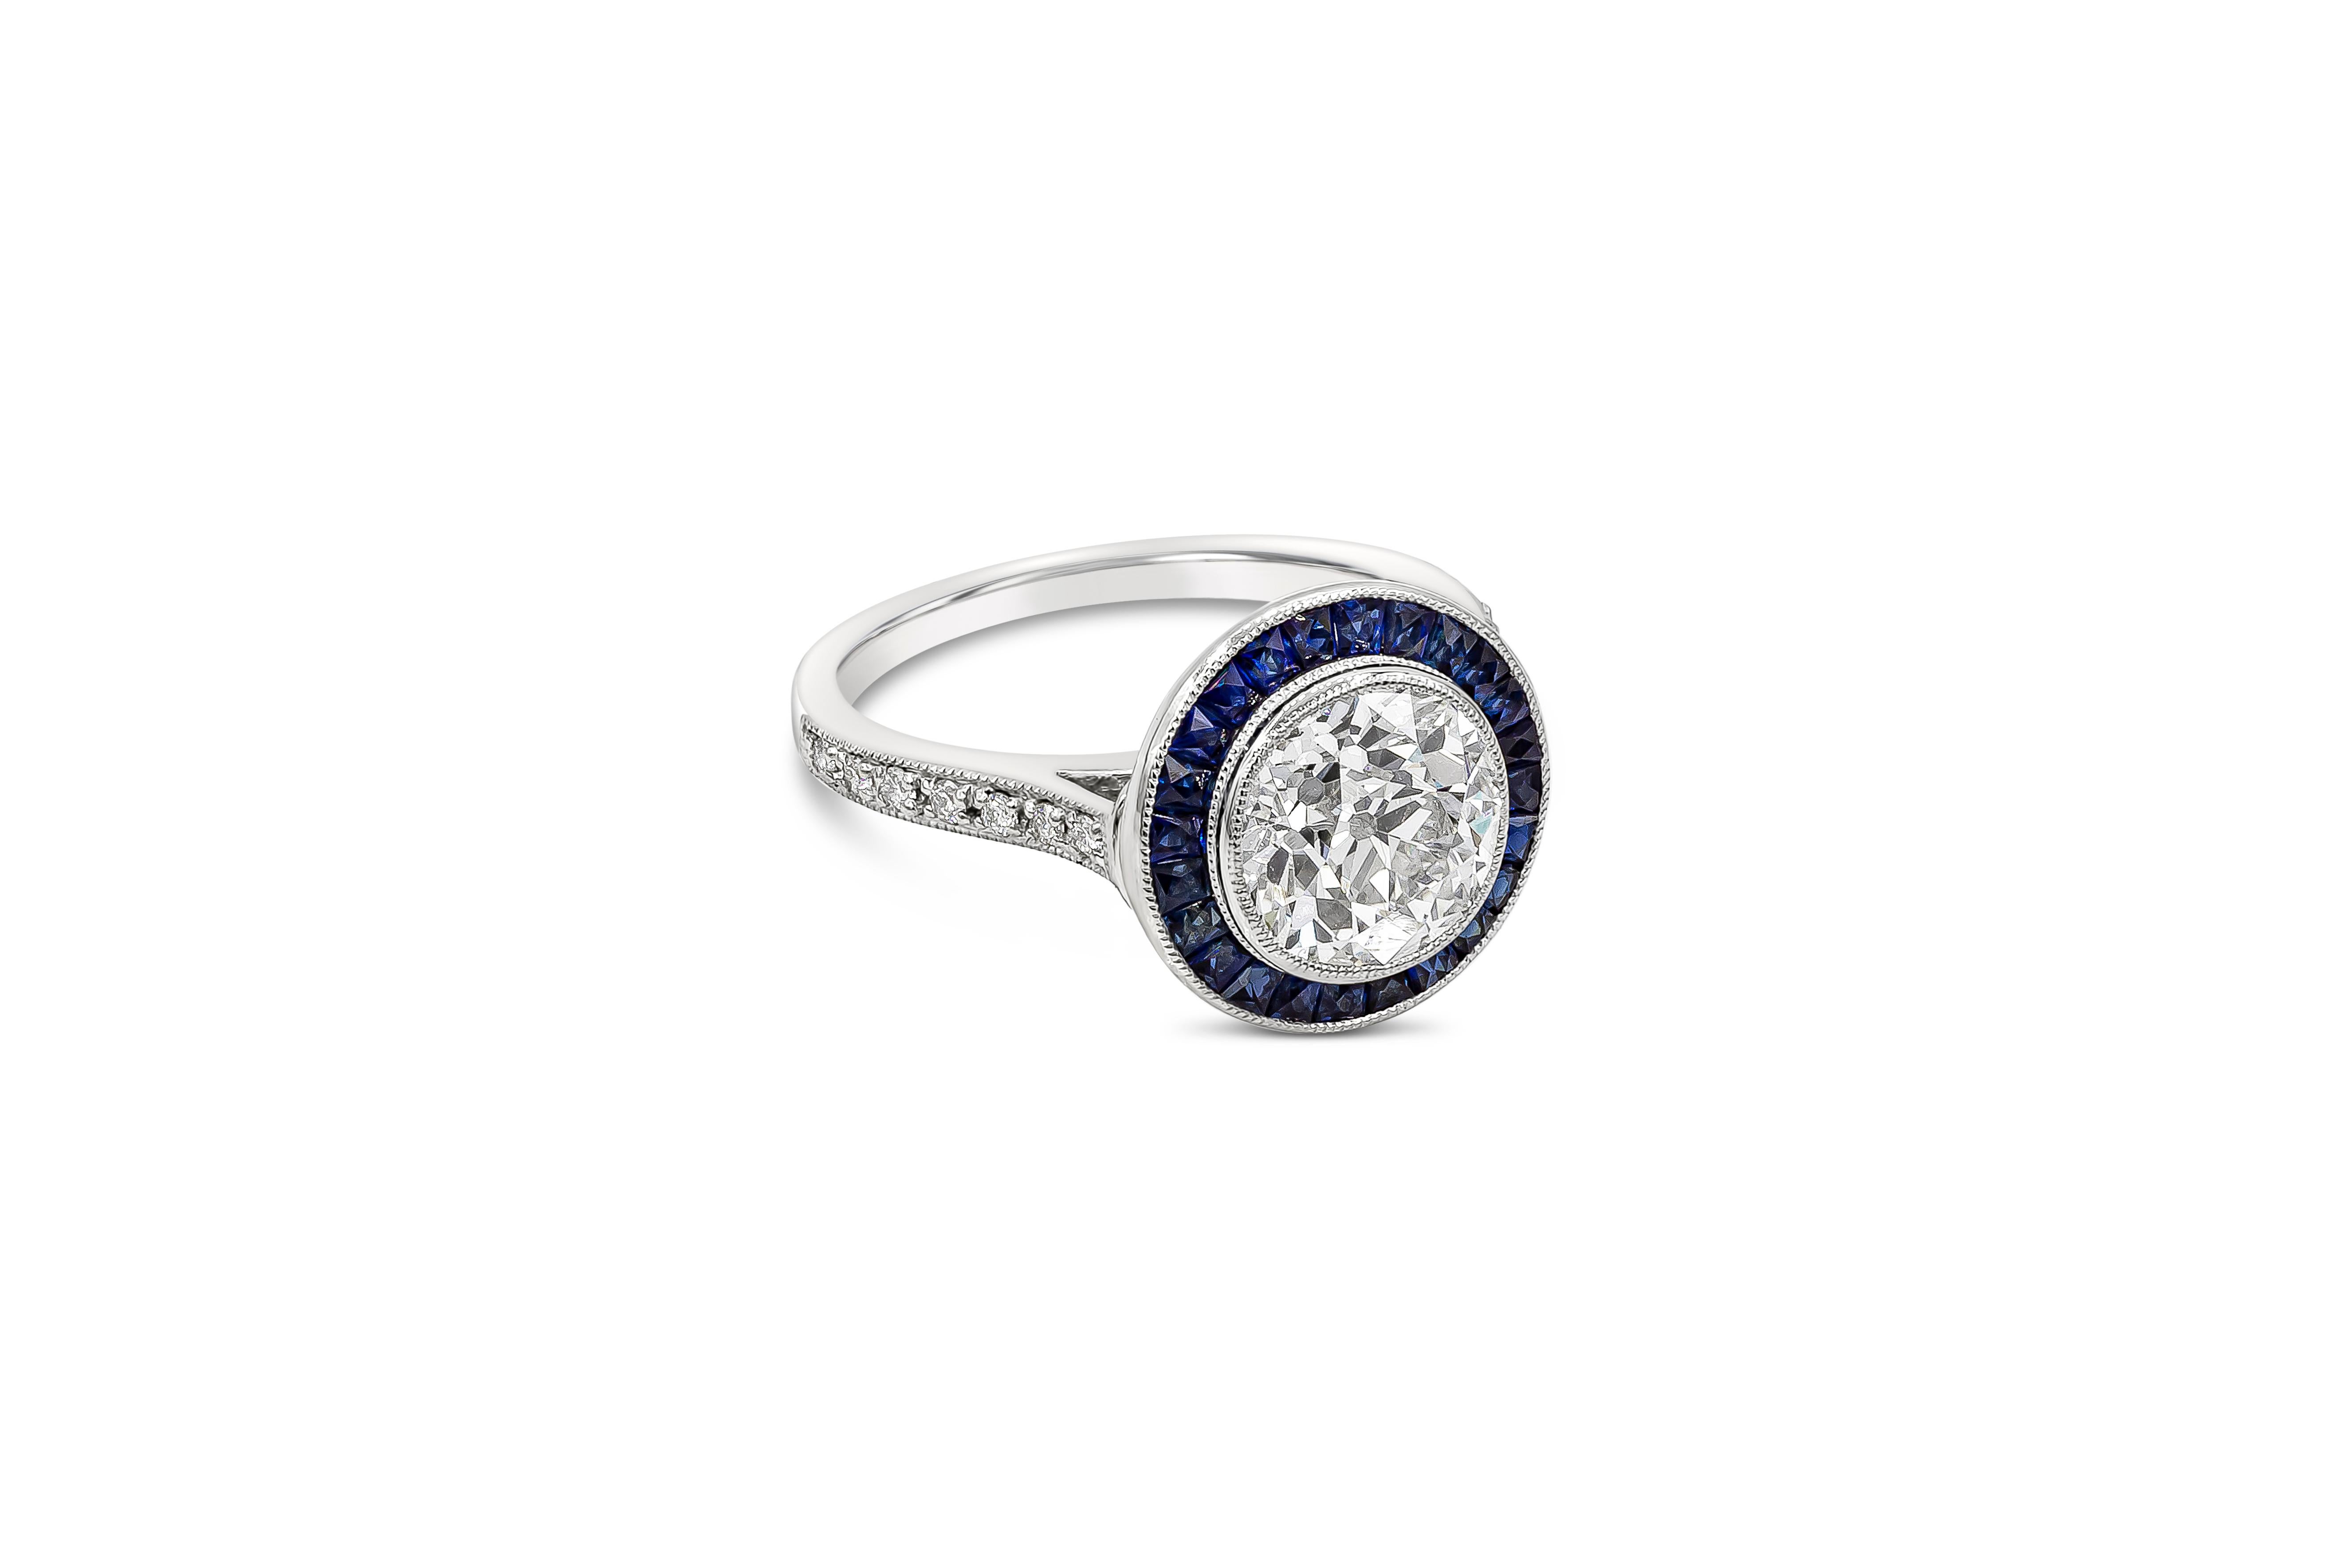 Ein Verlobungsring im Vintage-Stil mit einem GIA-zertifizierten 2,15-Karat-Diamanten im alten europäischen Schliff mit der Farbe G und der Reinheit VS2 in einer Lünette. Umgeben von blauen Saphiren im Prinzessinnenschliff mit einem Gesamtgewicht von